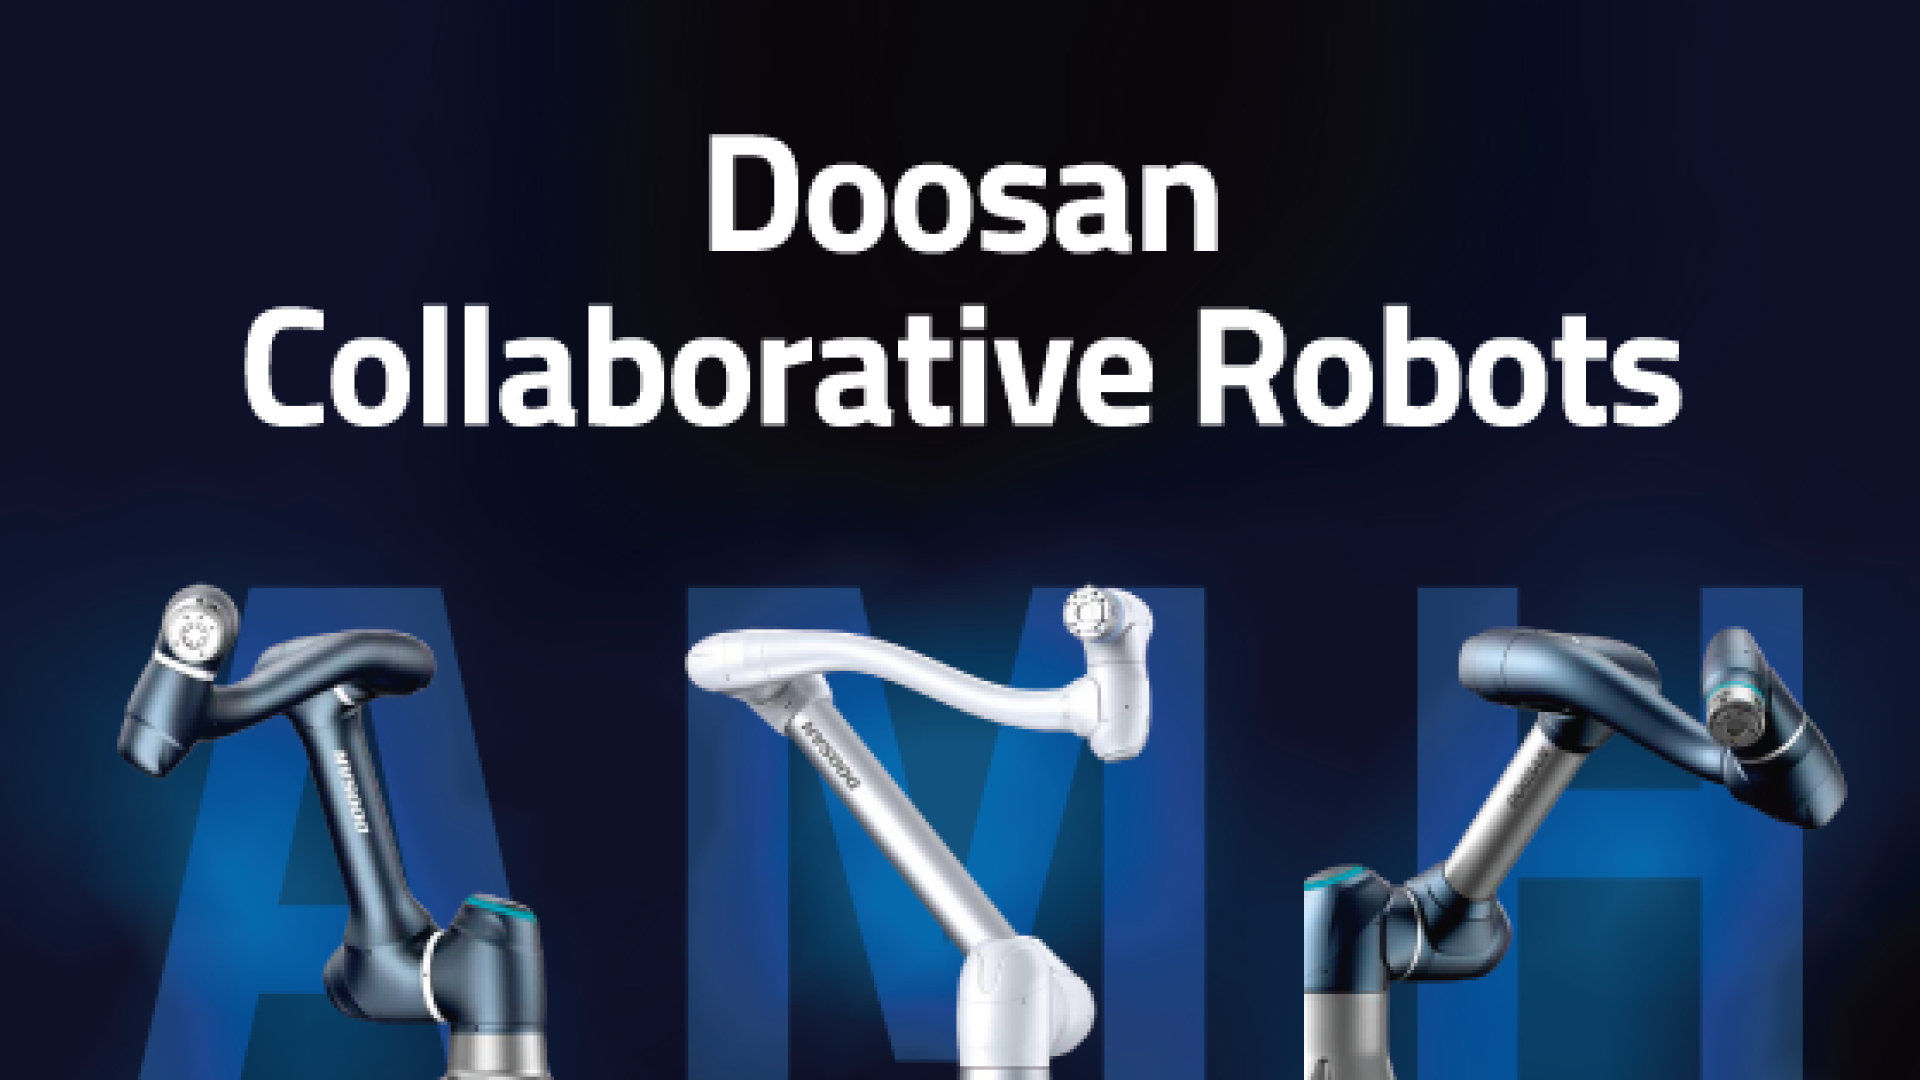 Doosan Collaborative Robots